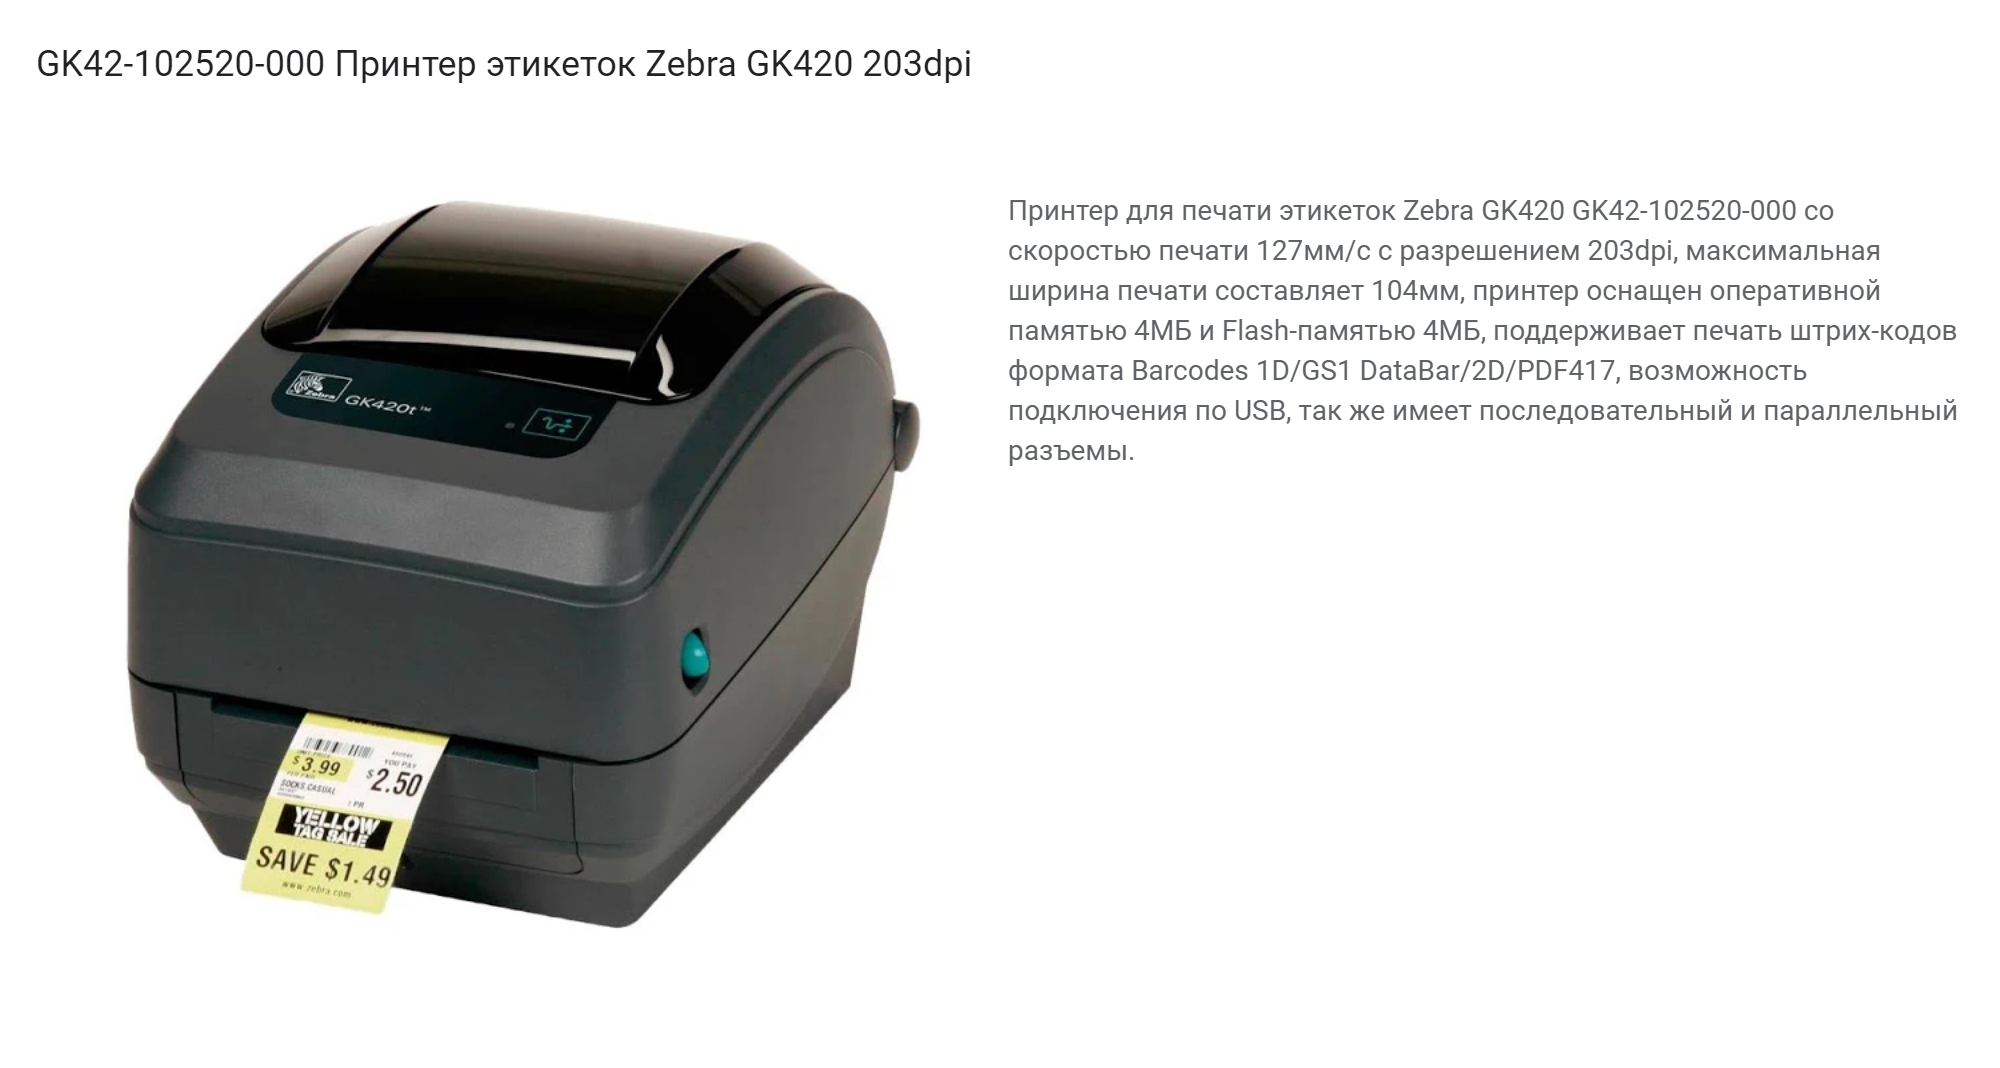 Это принтер компании «Зебра», который может печатать этикетки с маркировкой. Стоит такая модель около 30 000⁠—⁠40 000 ₽